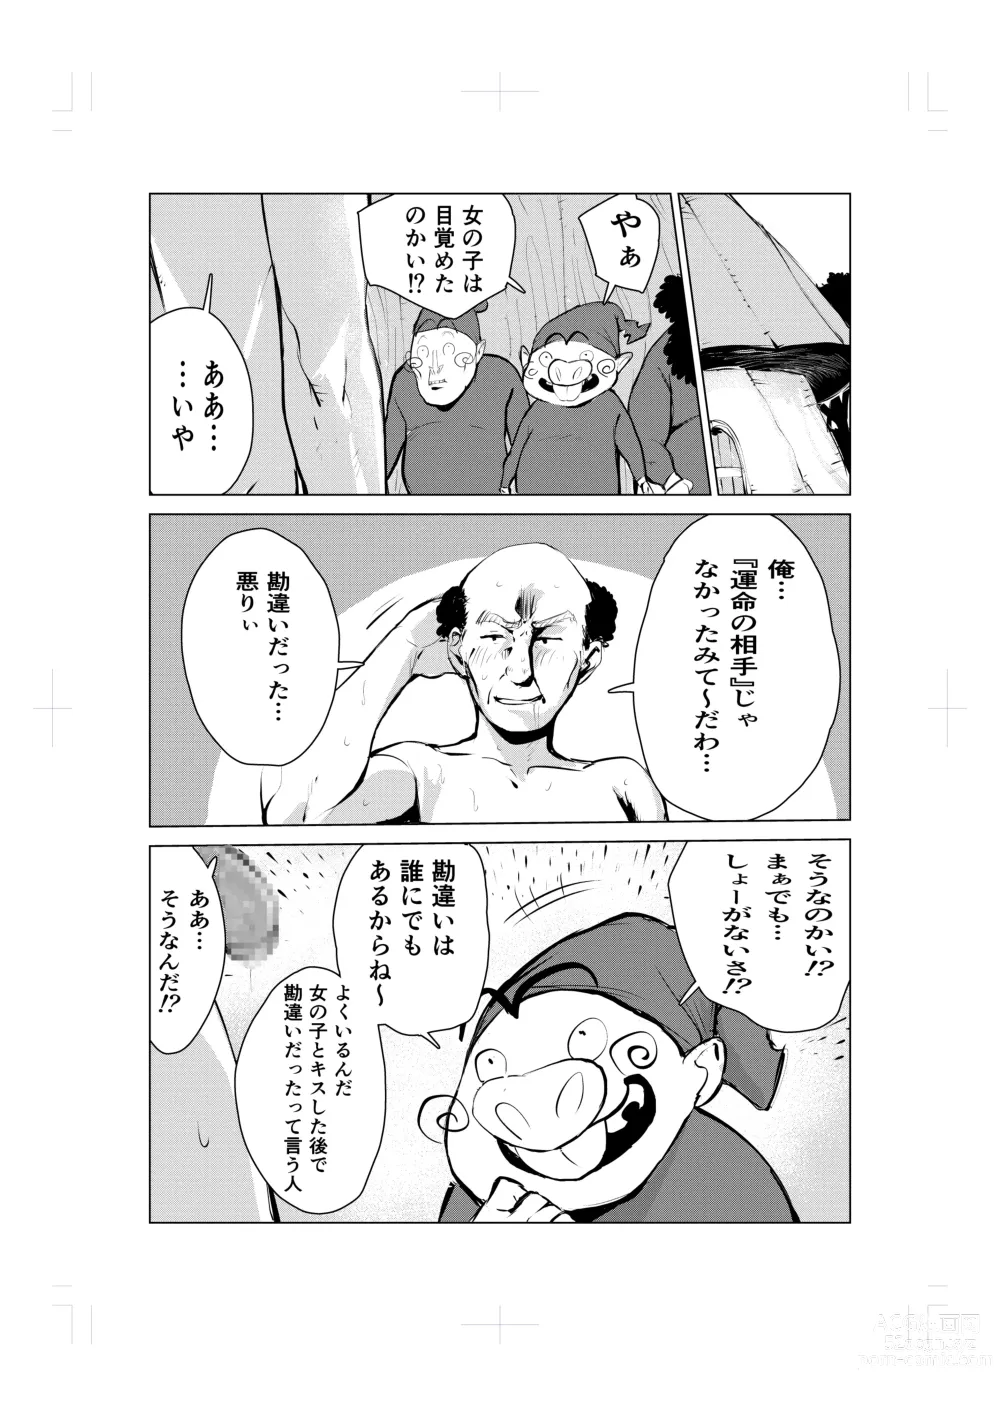 Page 16 of doujinshi Nemuri hime no ketsu ana ne bakku monogatari